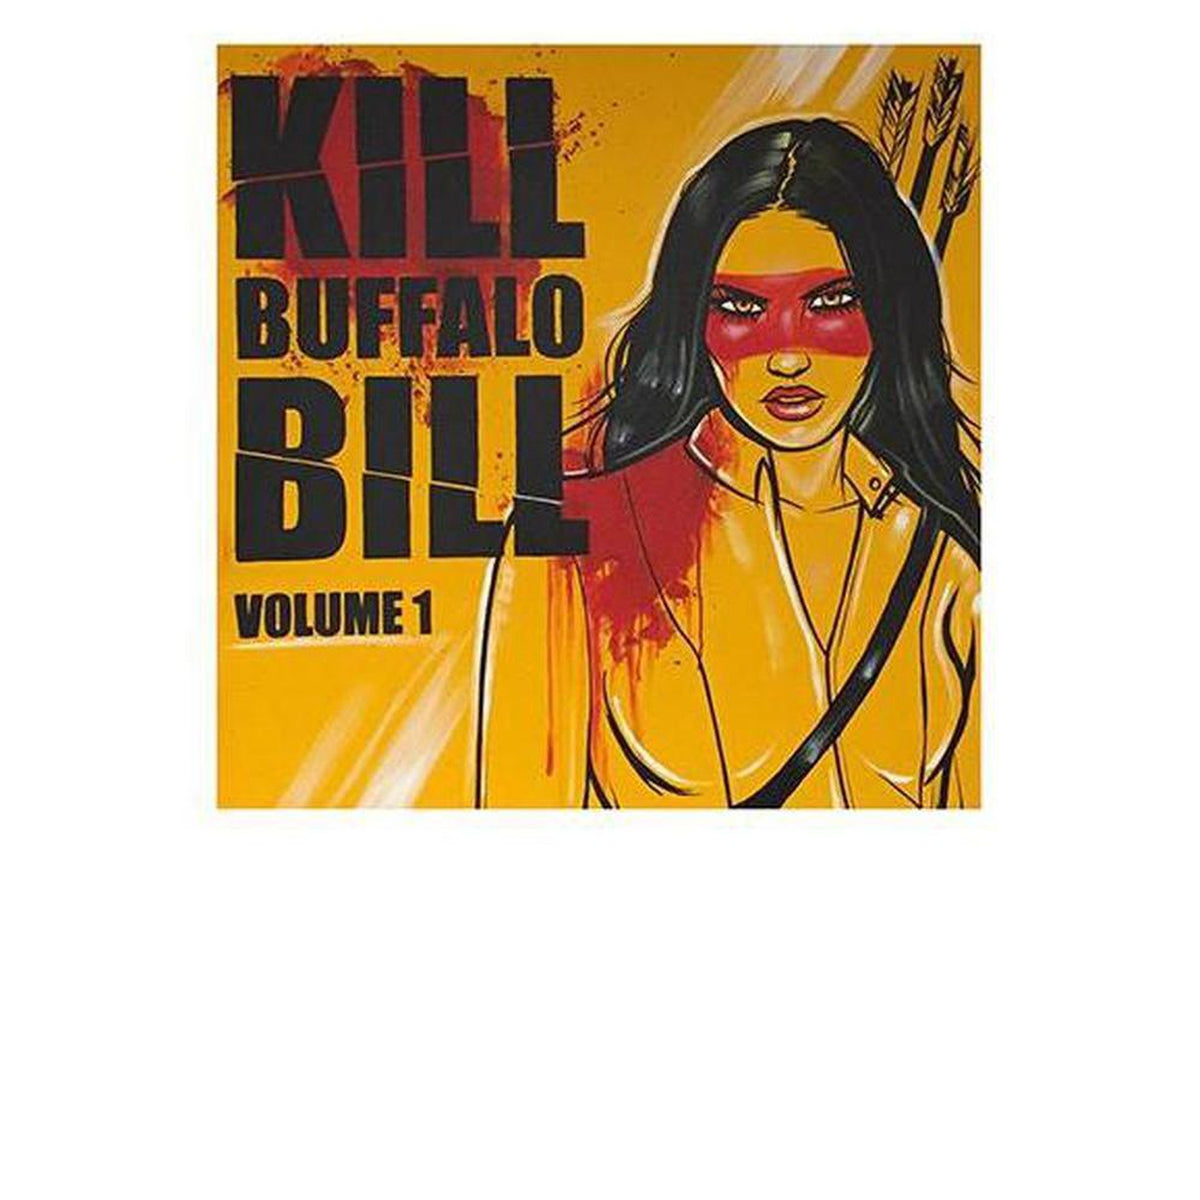 buffalo bill serial killer